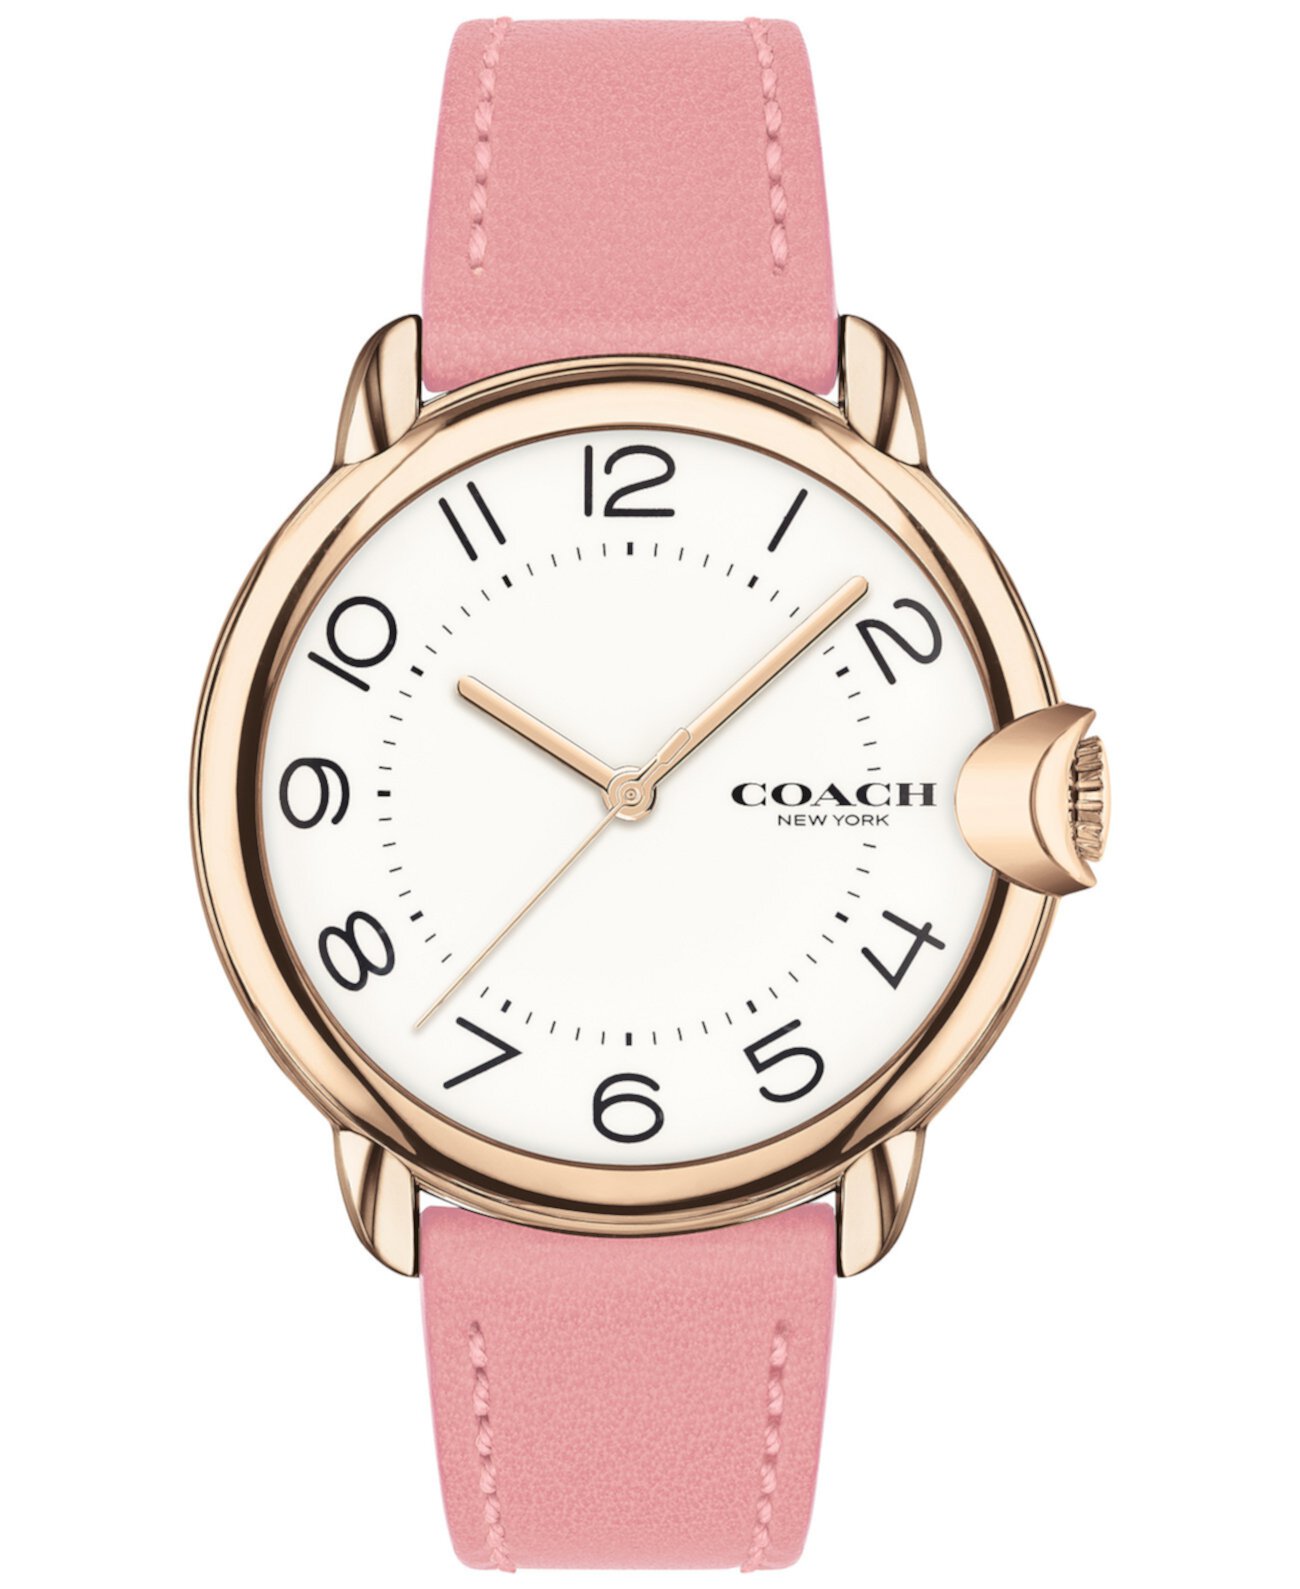 Женские часы Arden с розовым кожаным ремешком, 36 мм COACH